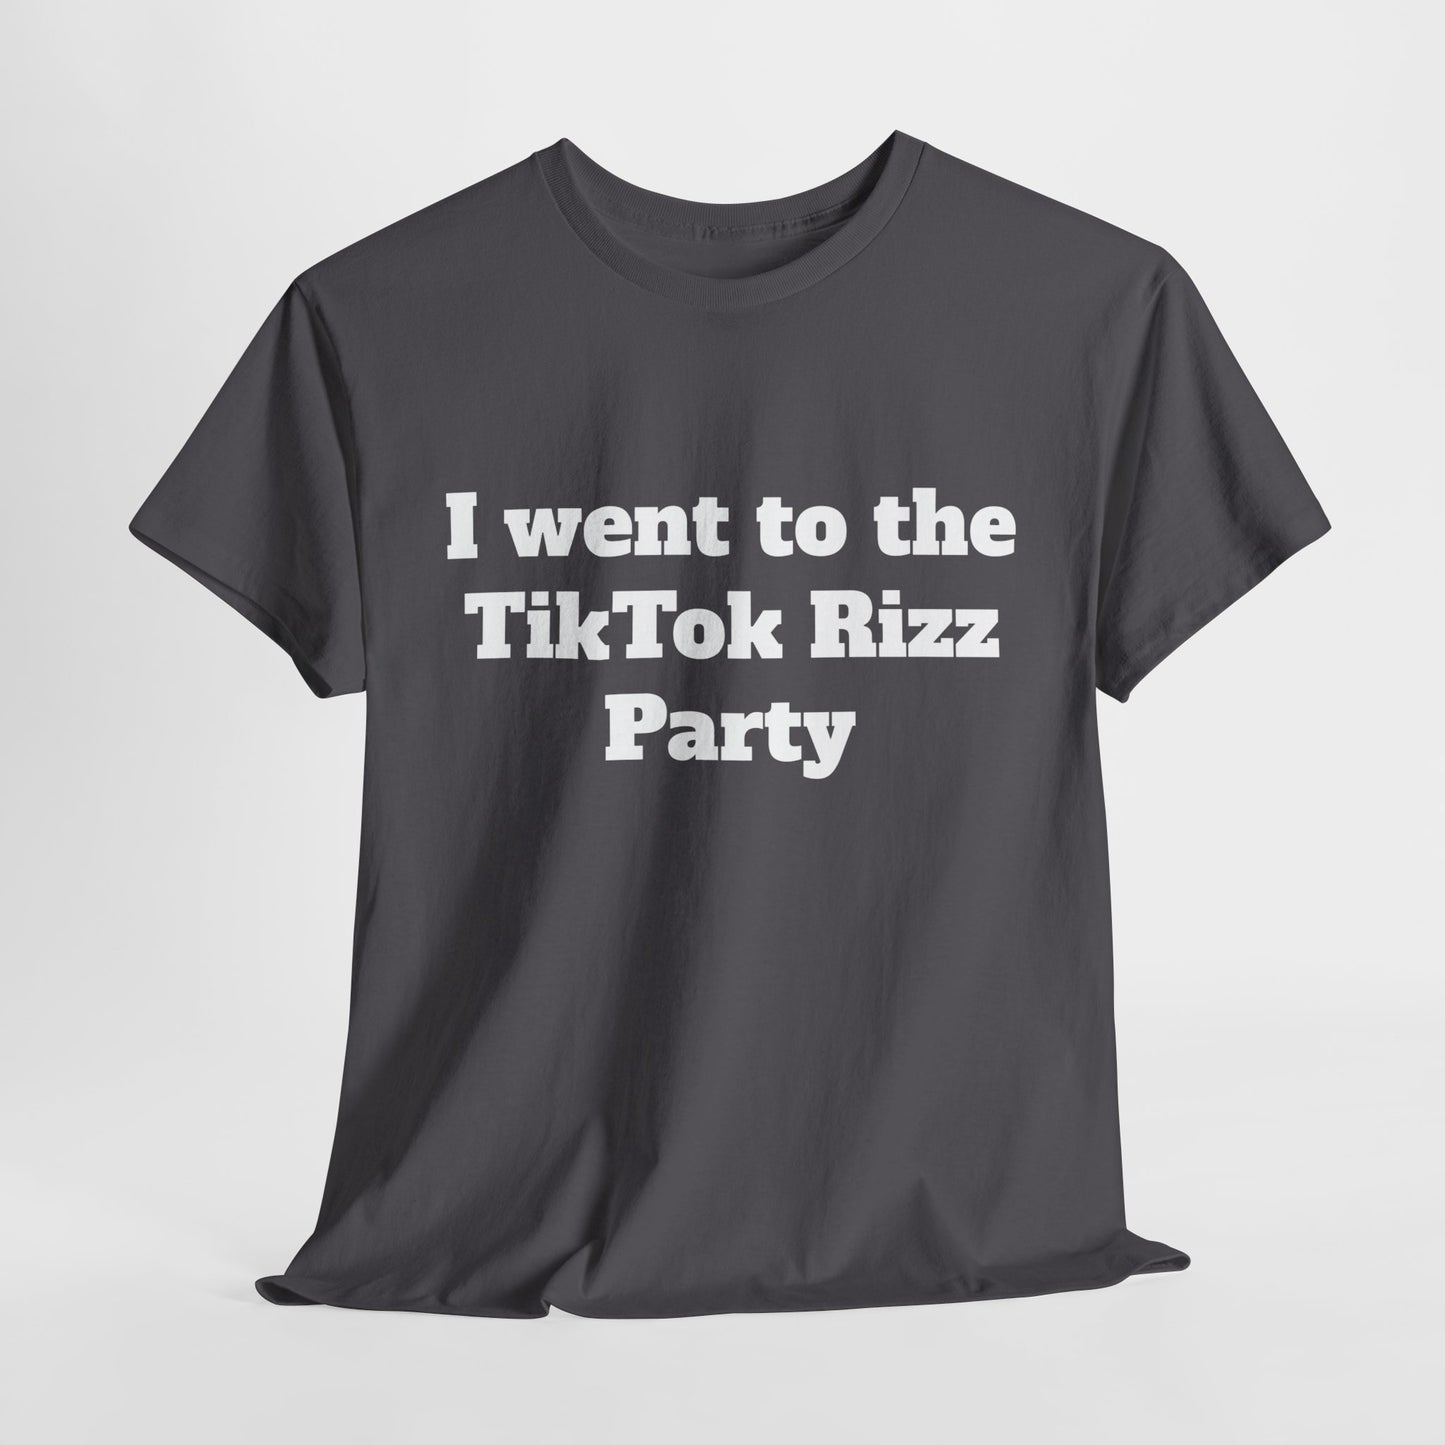 TikTok Rizz Party